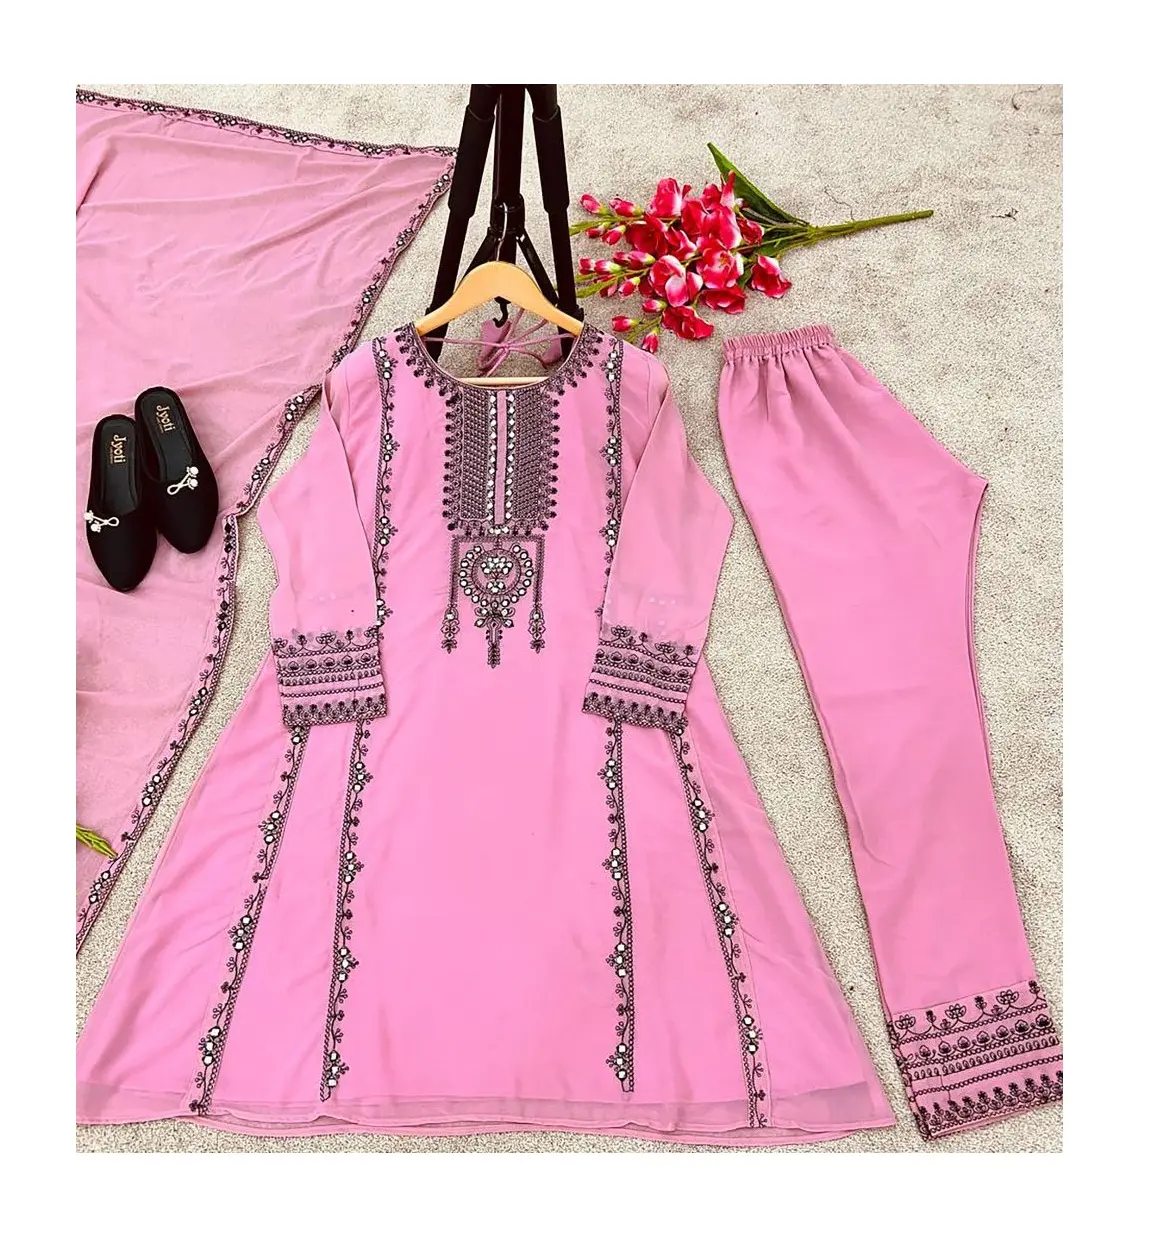 האחרון מעצב אופנתי משרד מעצב בגדים מזדמנים רקמה georgette נשים kurta pant ערכות הסיטונאי שיעור זול הודית